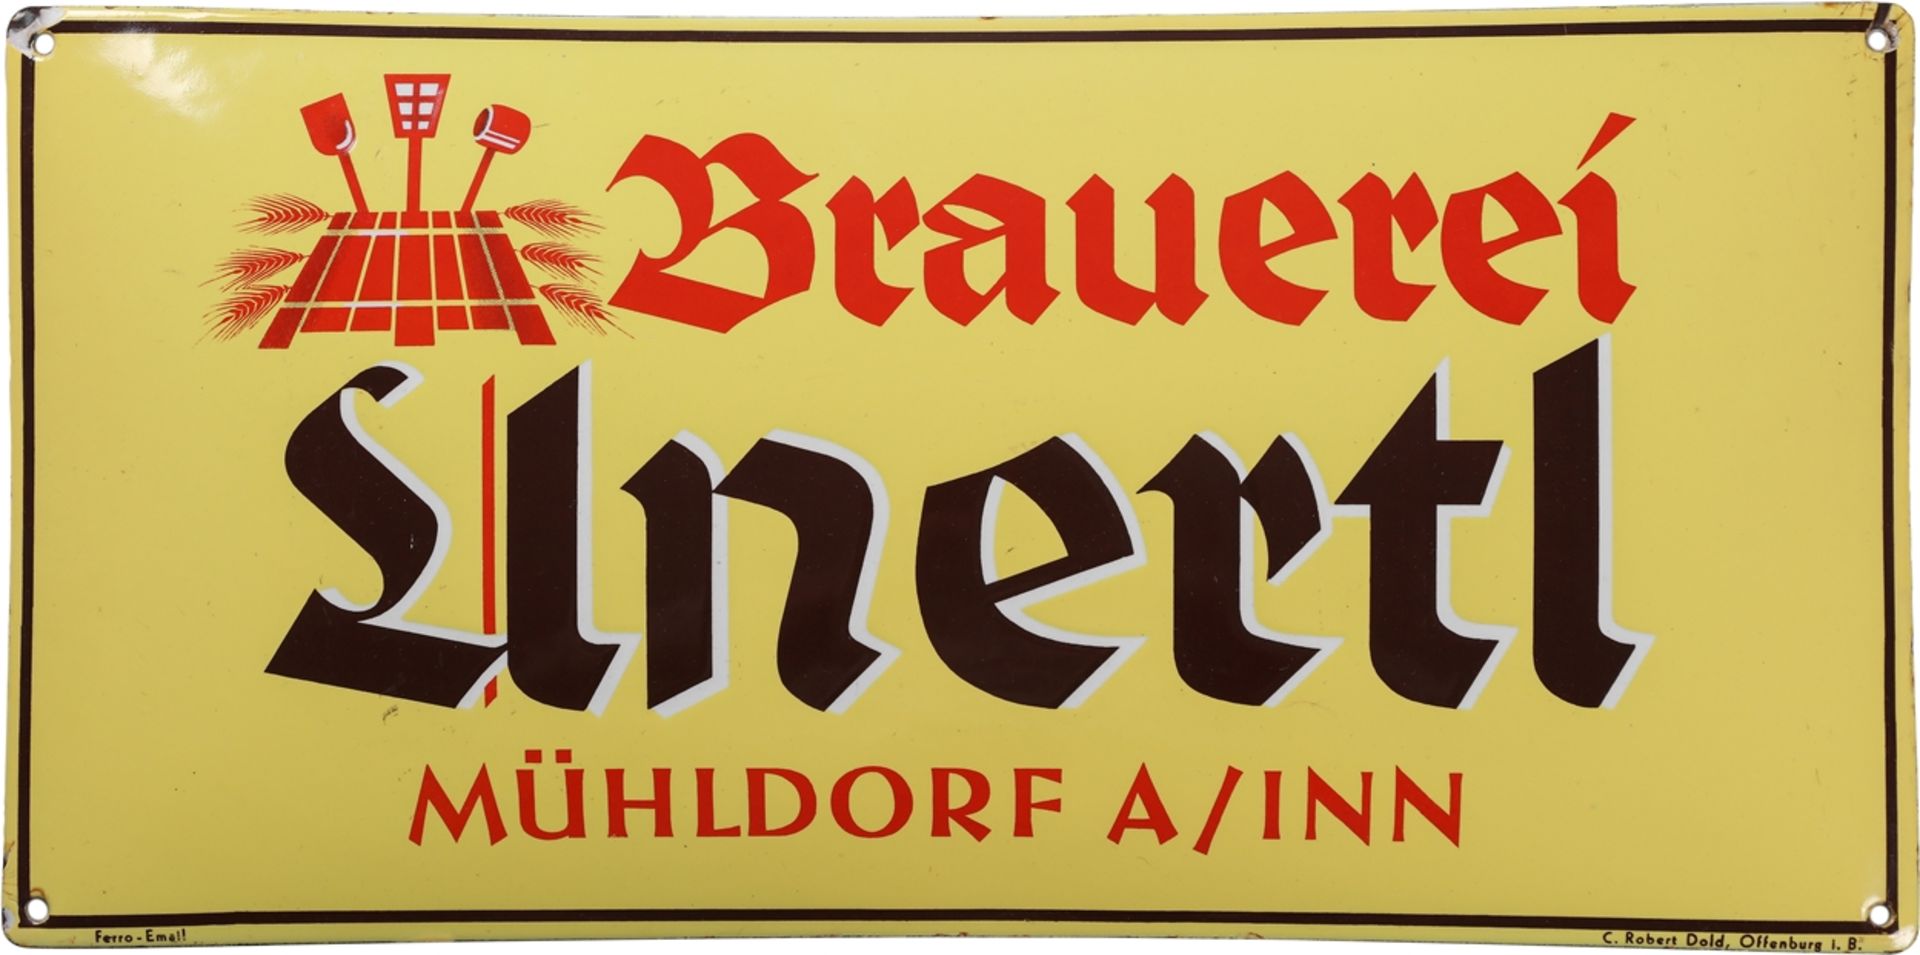 Enamel sign for the Unertl brewery, wheat beer, Mühldorf am Inn, around 1930